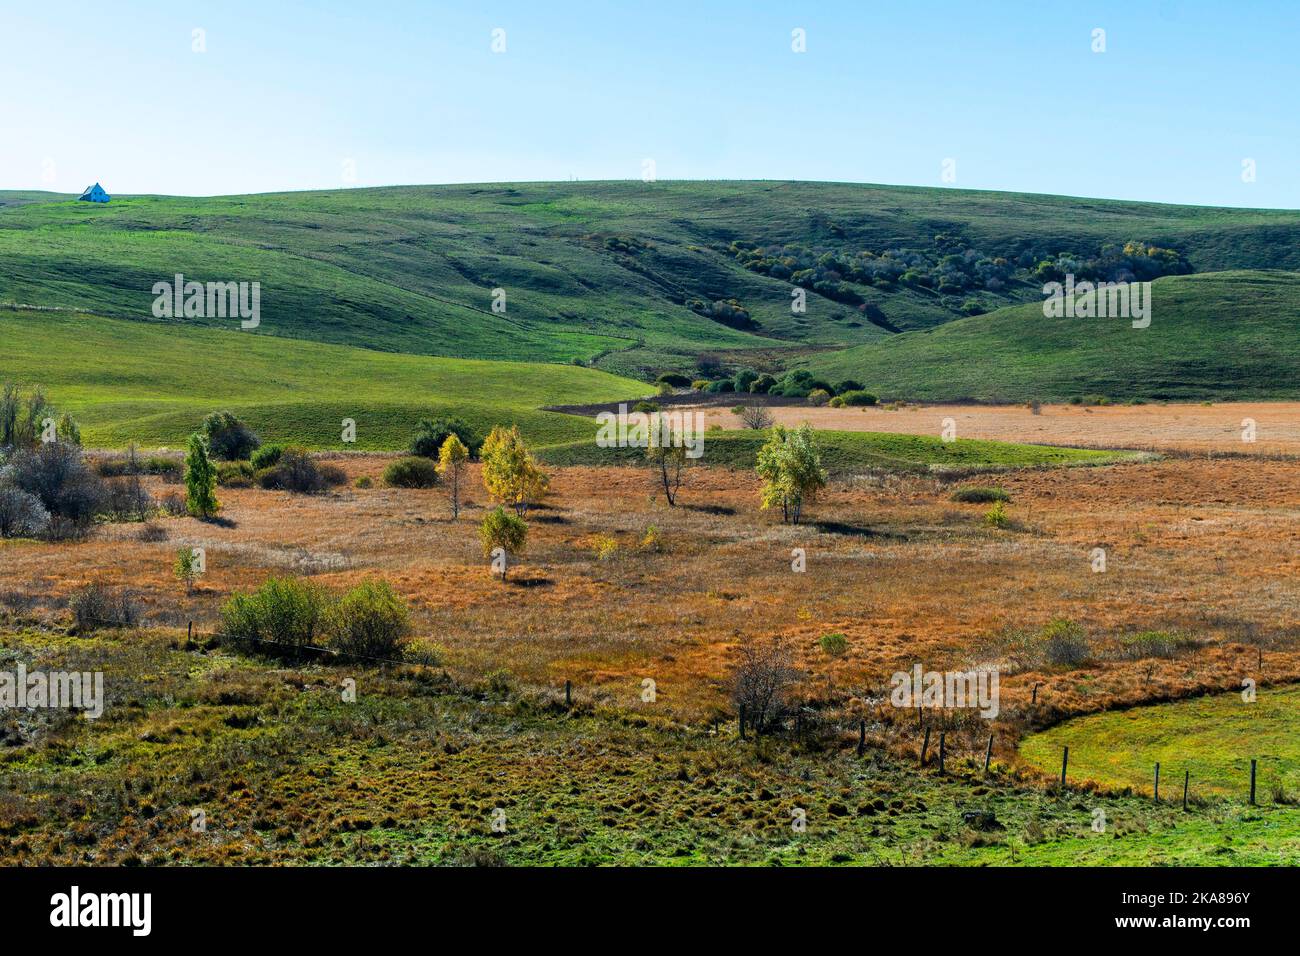 Moorlandschaft mit trockenem Moorgras, Cezallier-Hochebene, Puy de Dome, Auvergne Rhone Alpes, Frankreich Stockfoto